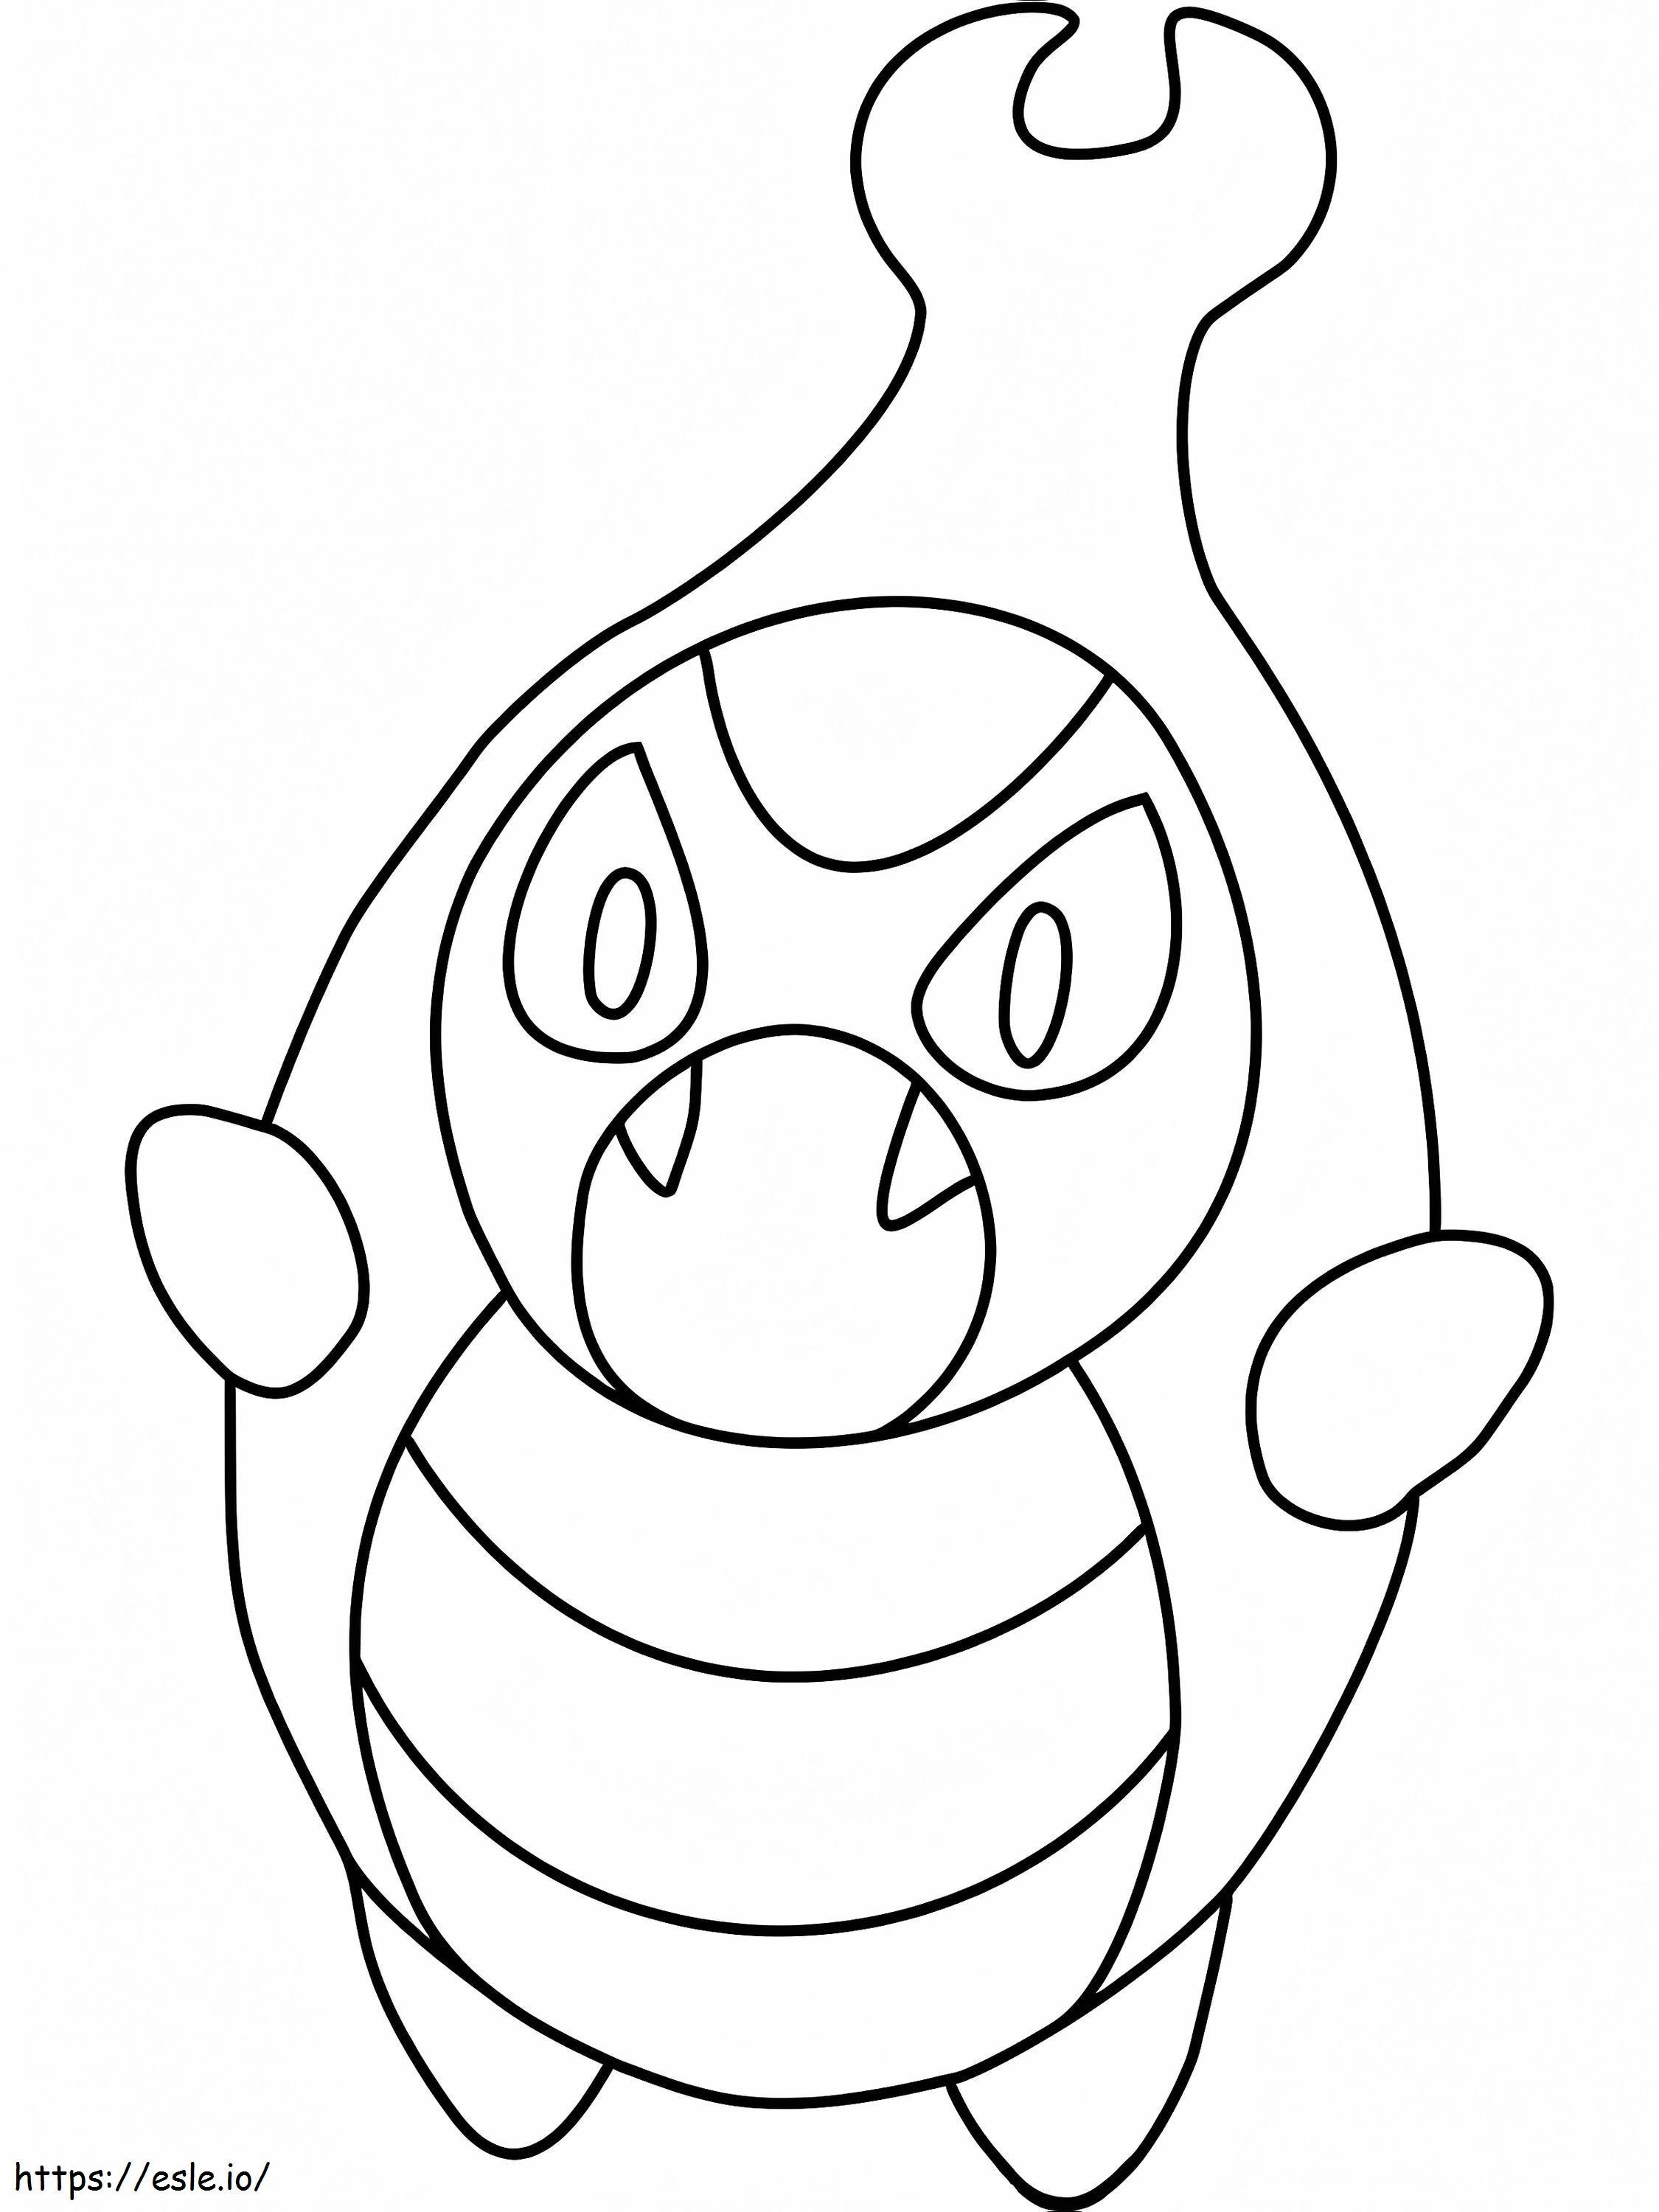 Coloriage Pokémon Karrablast Gen 5 à imprimer dessin